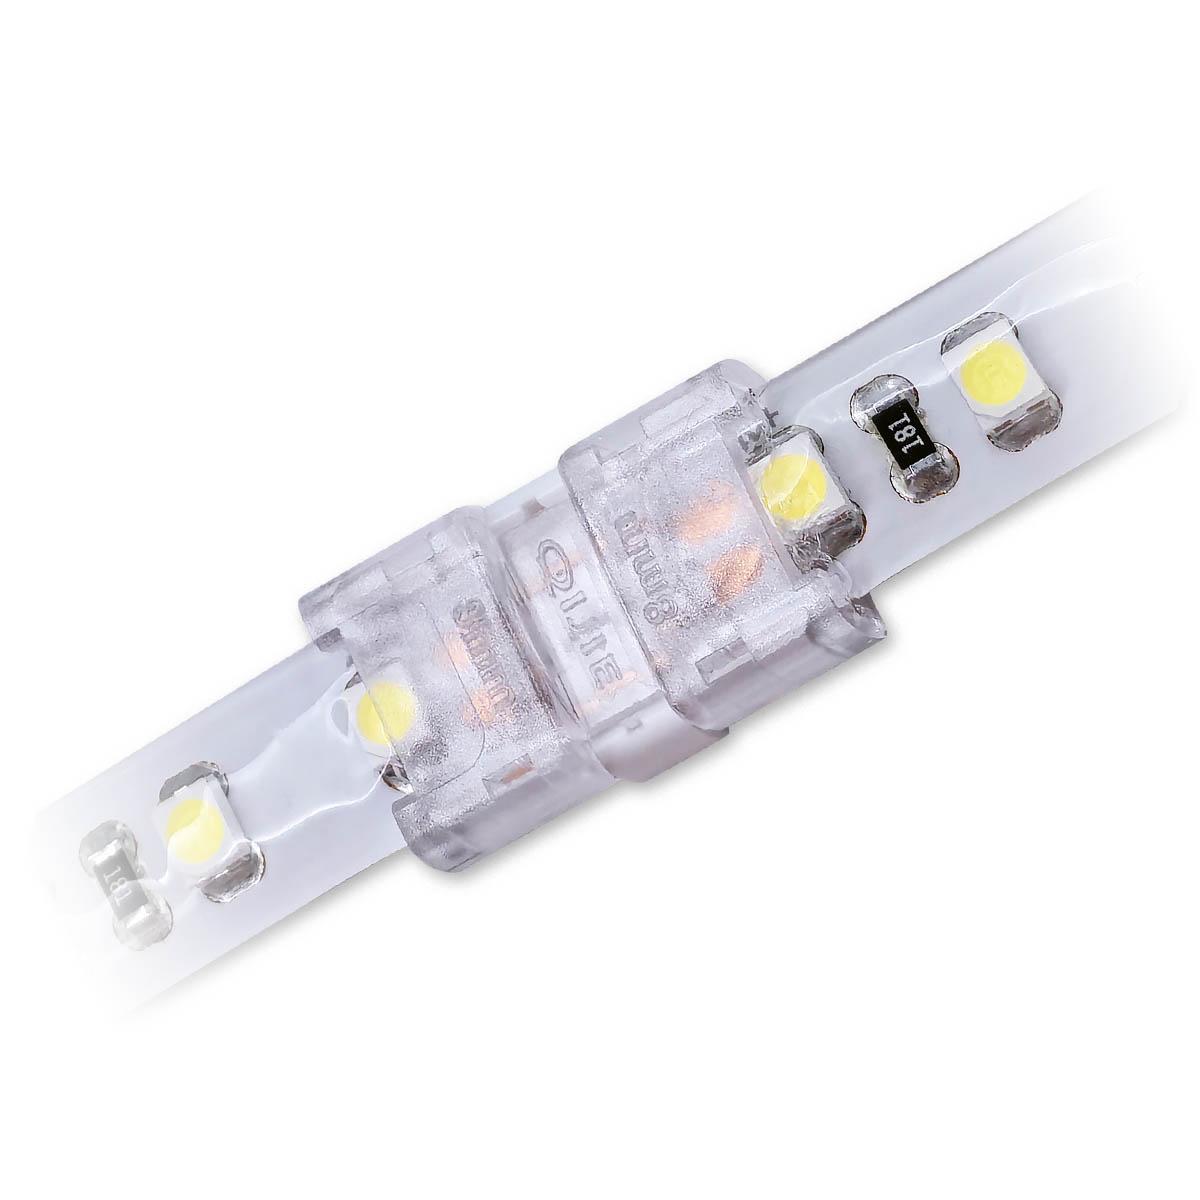 Streifenverbinder 2 Pin für einfarbige LED-Streifen 8mm IP65